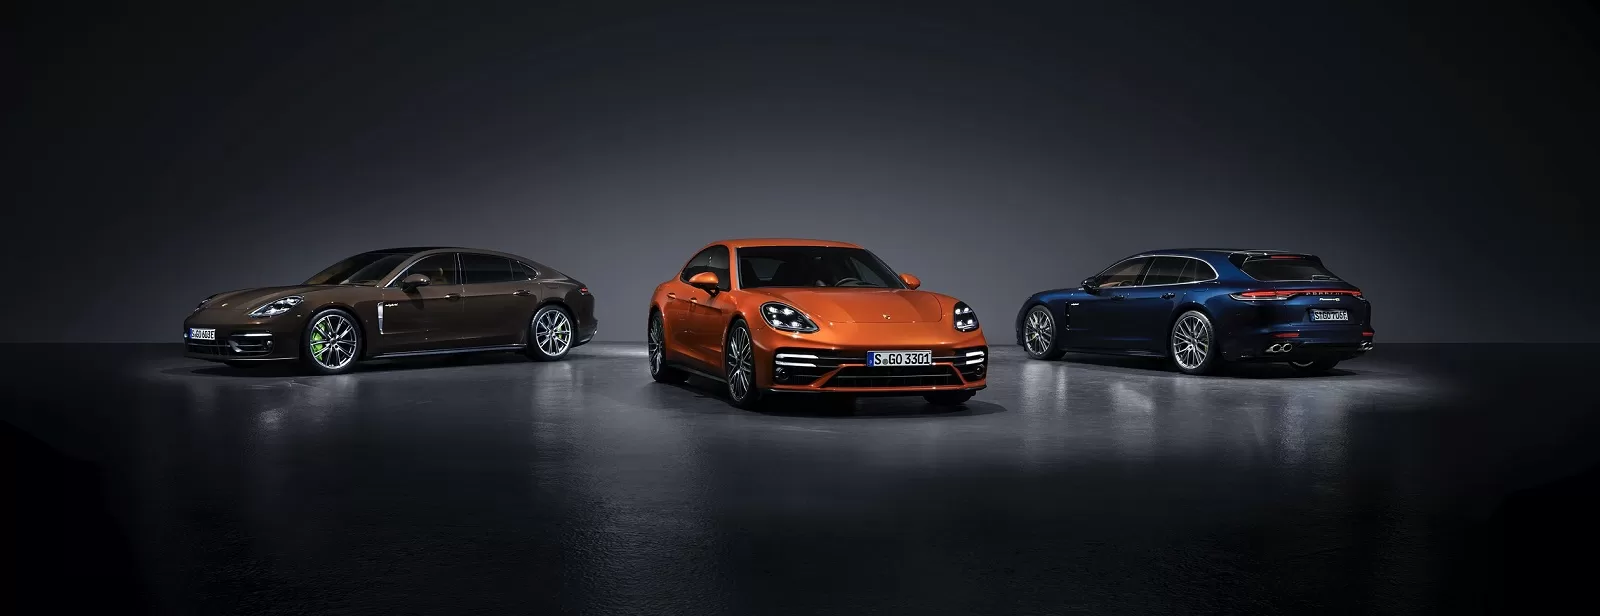 Лучшая в классе динамика: обновленный Porsche Panamera